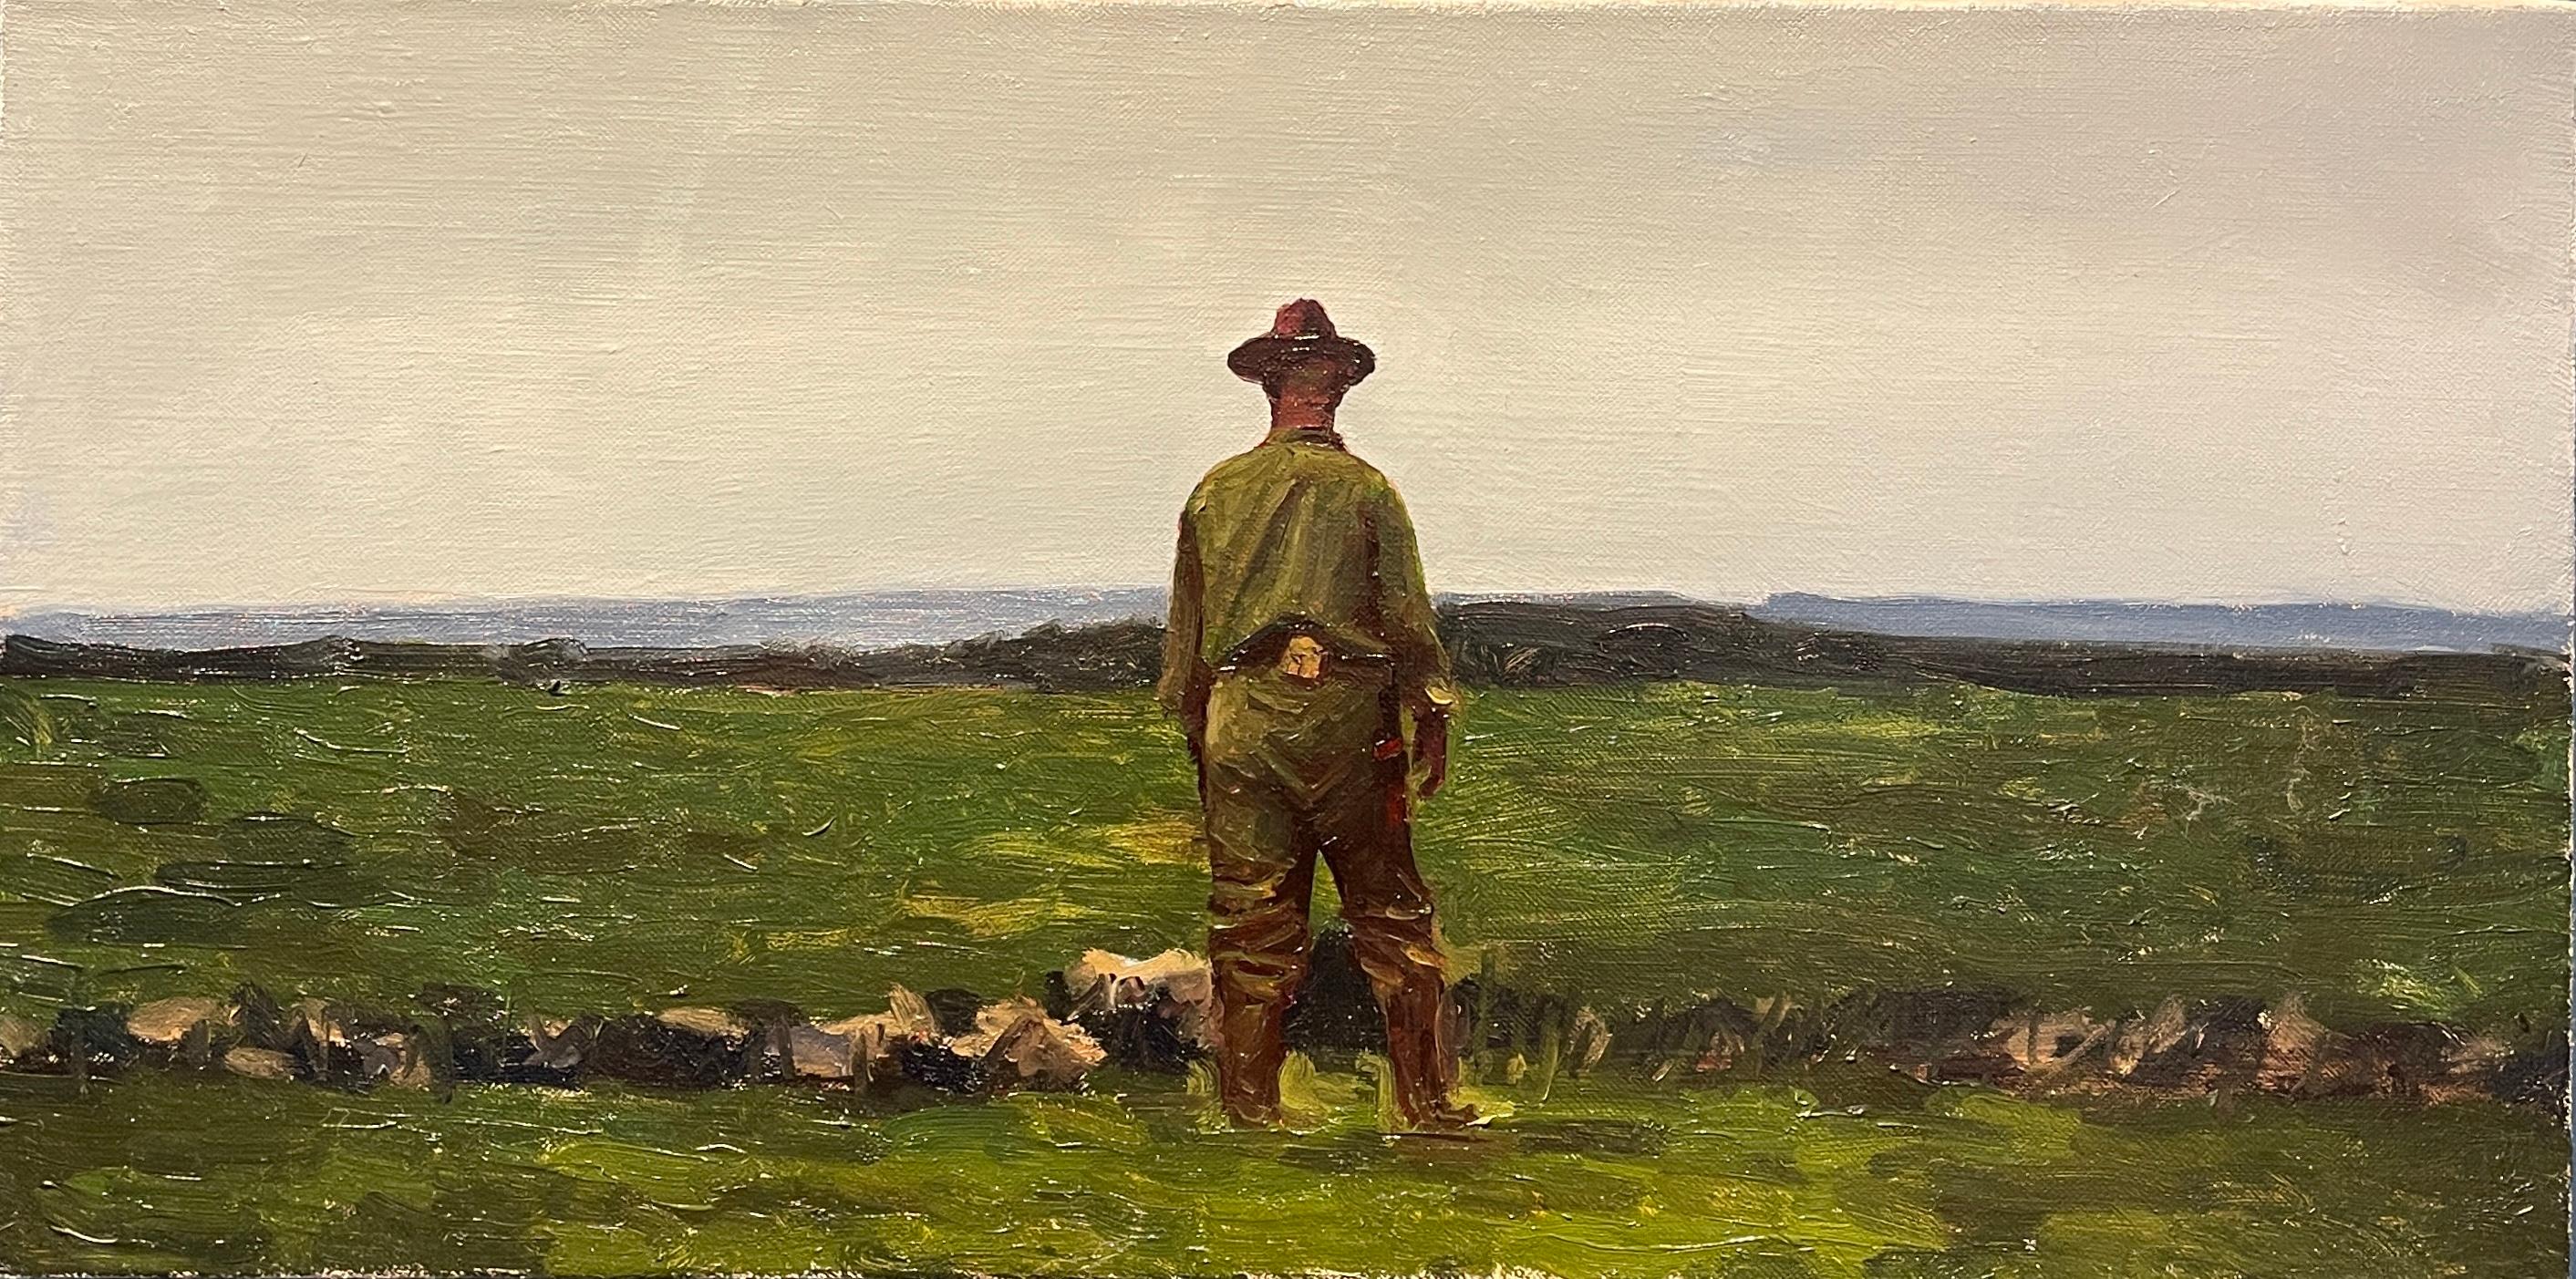 Old Field, A Uniformed Soldier Standing in an Open Field, Oil on Linen